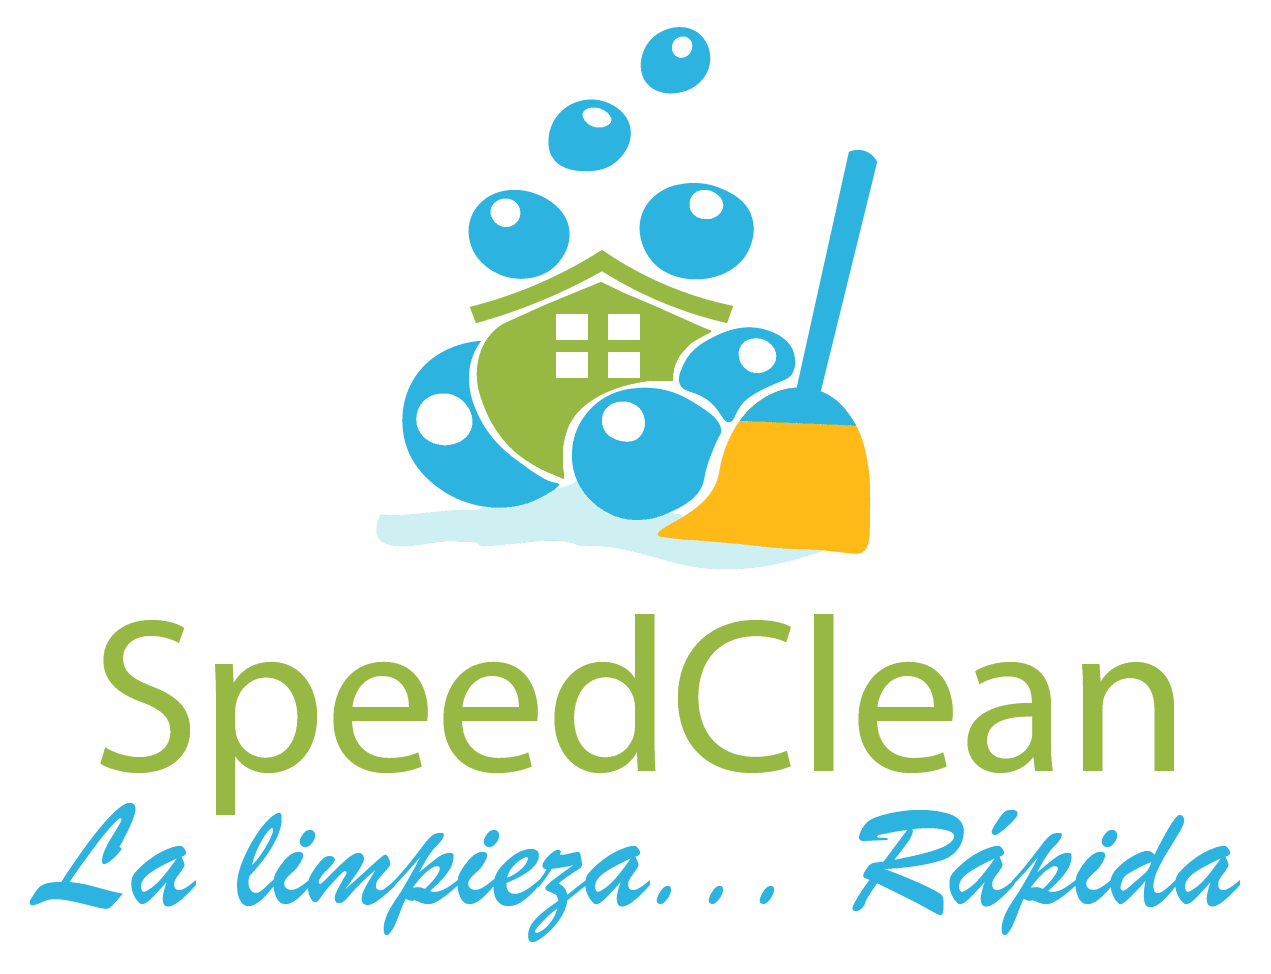 SpeedClean La limpieza... Rápida